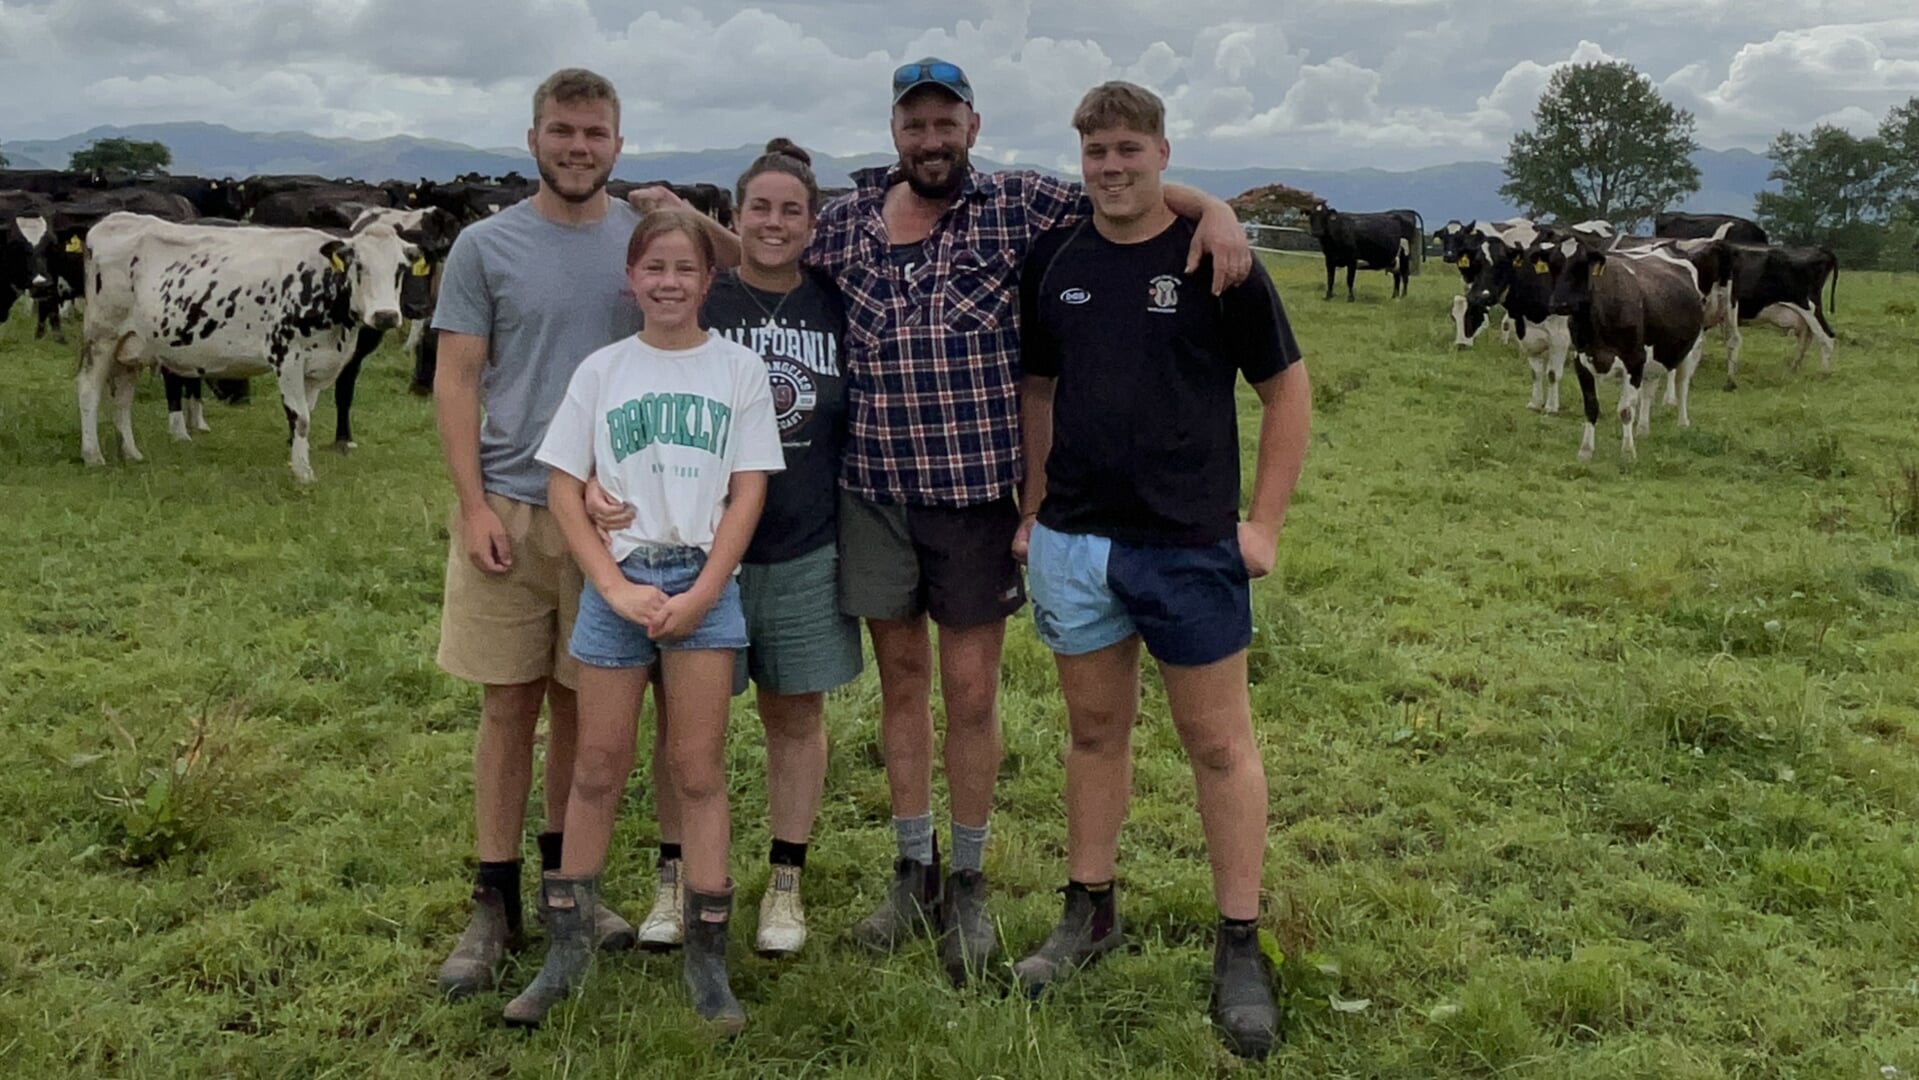 De familie Van Kessel is helemaal thuis in Nieuw-Zeeland. In het land van de 'Kiwi's' vonden ze de ideale basis voor hun boerenbedrijf.